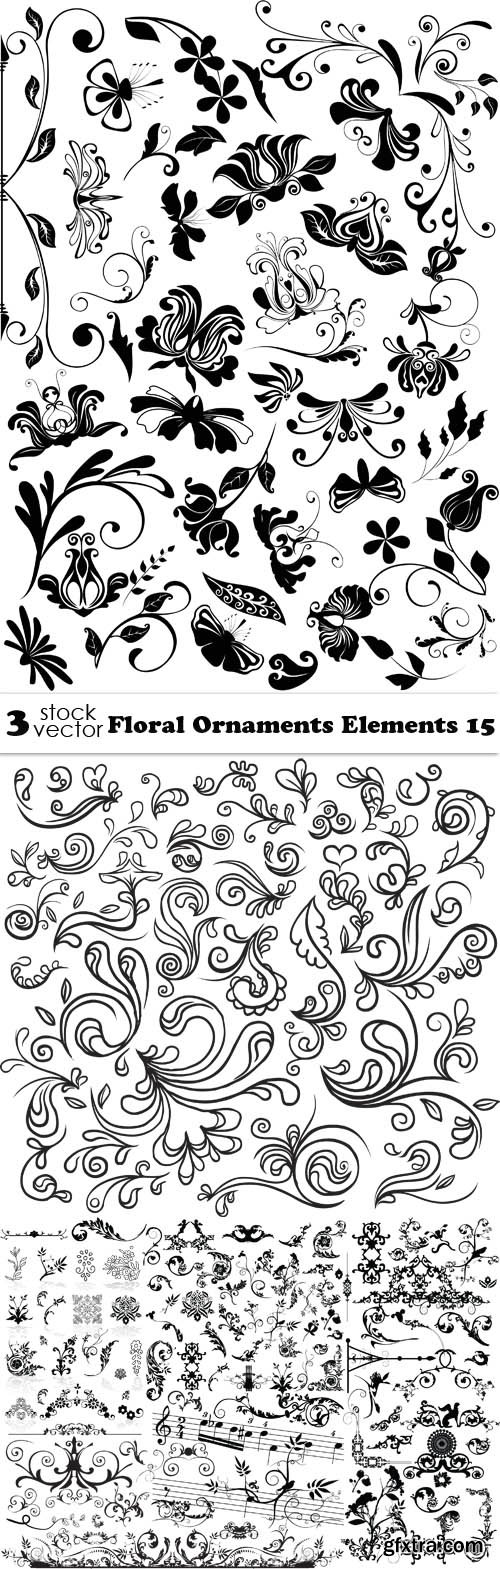 Vectors - Floral Ornaments Elements 15